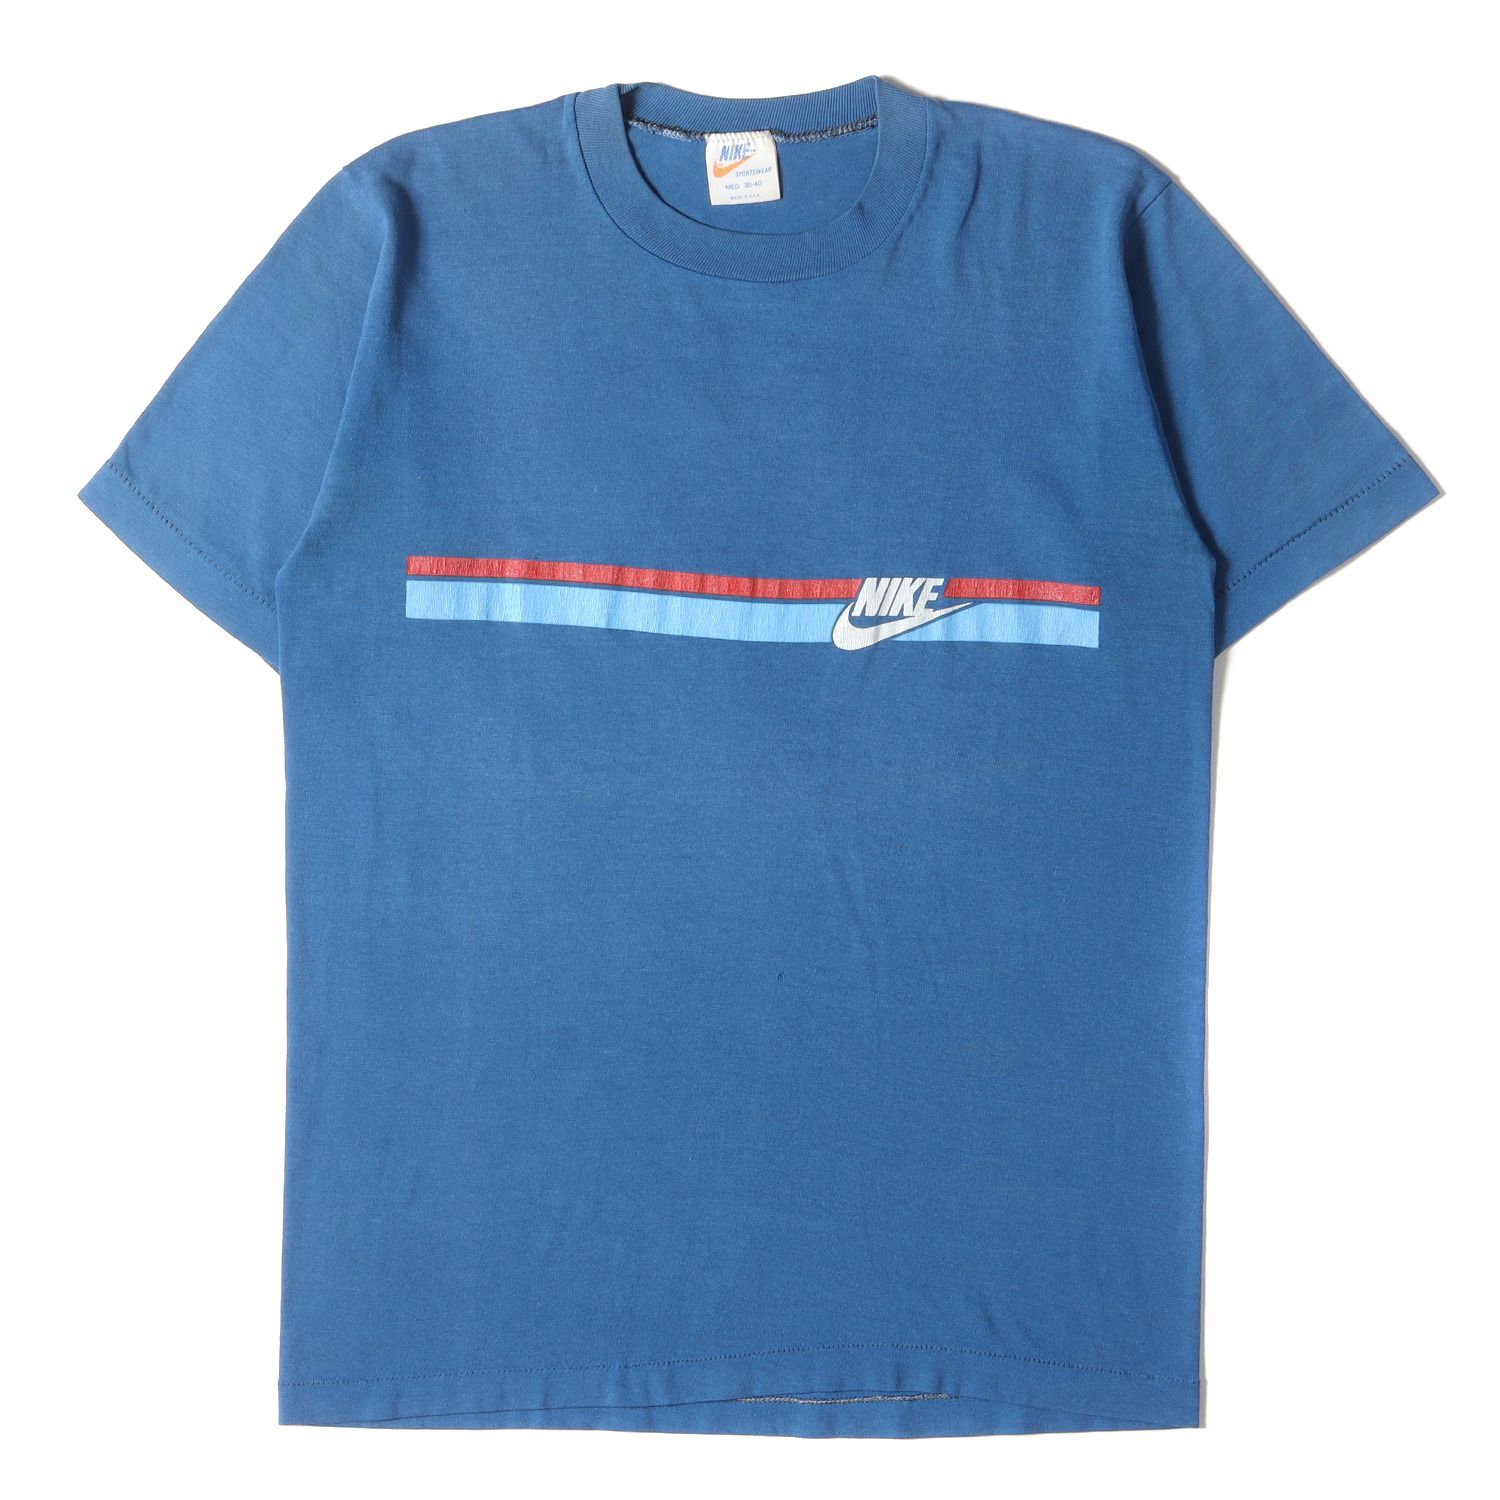 NIKE vintage ナイキ ヴィンテージ 70s オレンジタグ ロゴ プリント クルーネック Tシャツ USA製 ブルー M トップス  カットソー 半袖 アメカジ カジュアル 古着